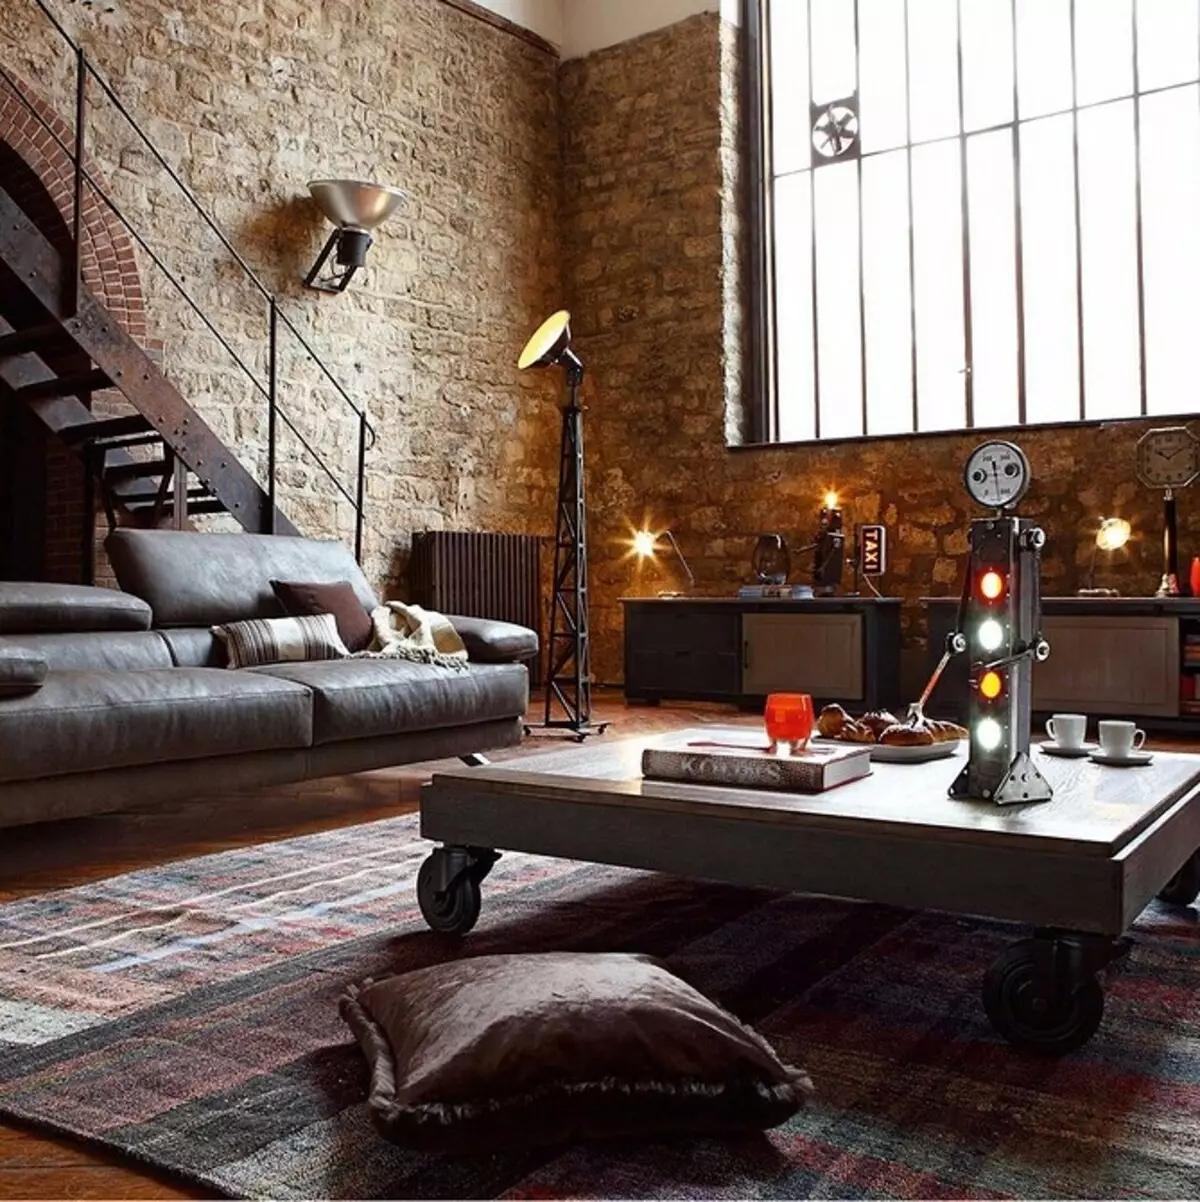 Interiérový obývací pokoj v soukromém domě: Vytvořte pokoj krásně a funkčně 8382_94